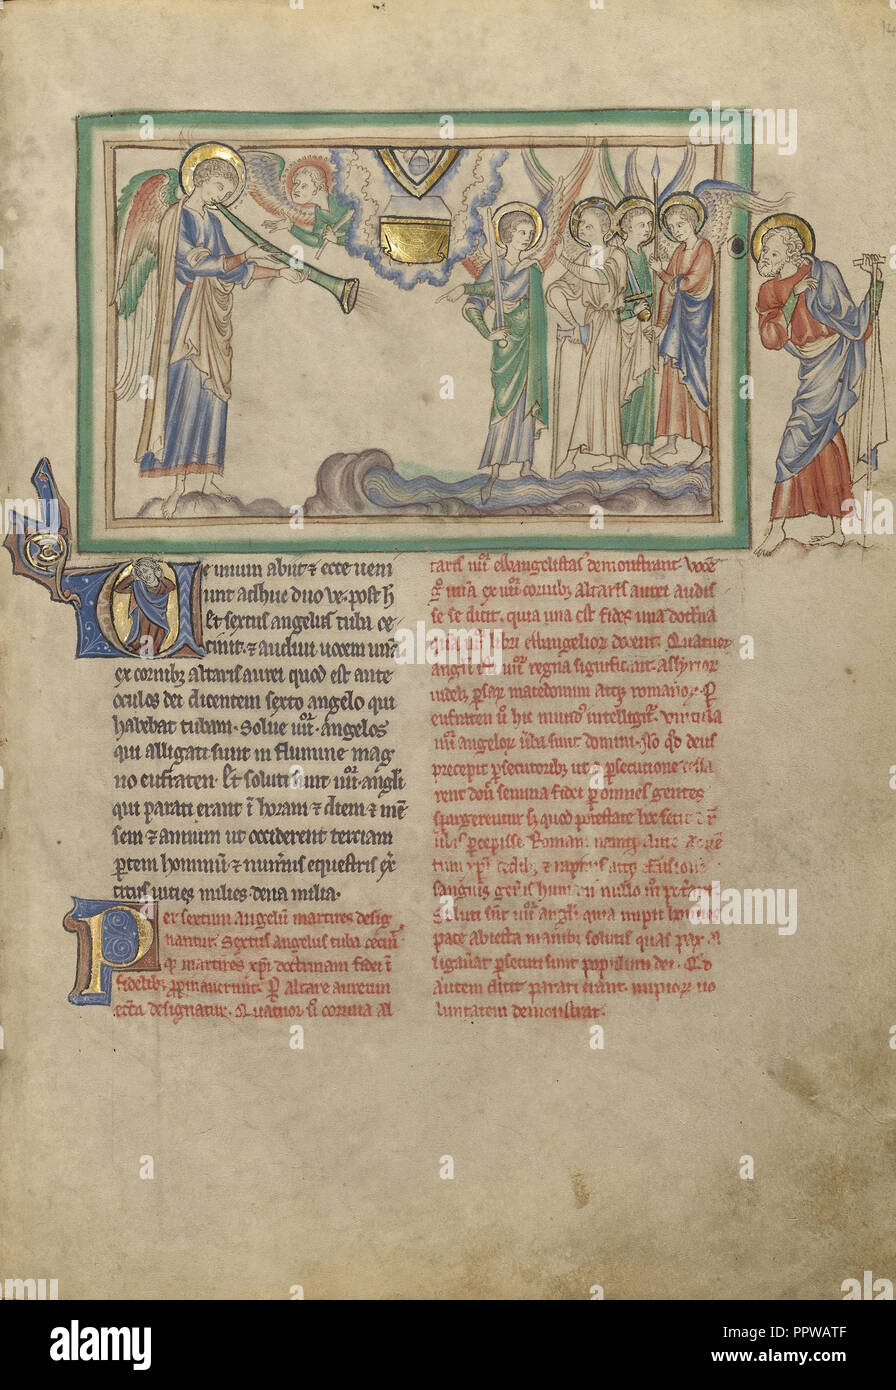 La sesta tromba: Angelo all'Eufrate; Londra, probabilmente, Inghilterra; circa 1255 - 1260; tempere, foglia oro, colorati Foto Stock